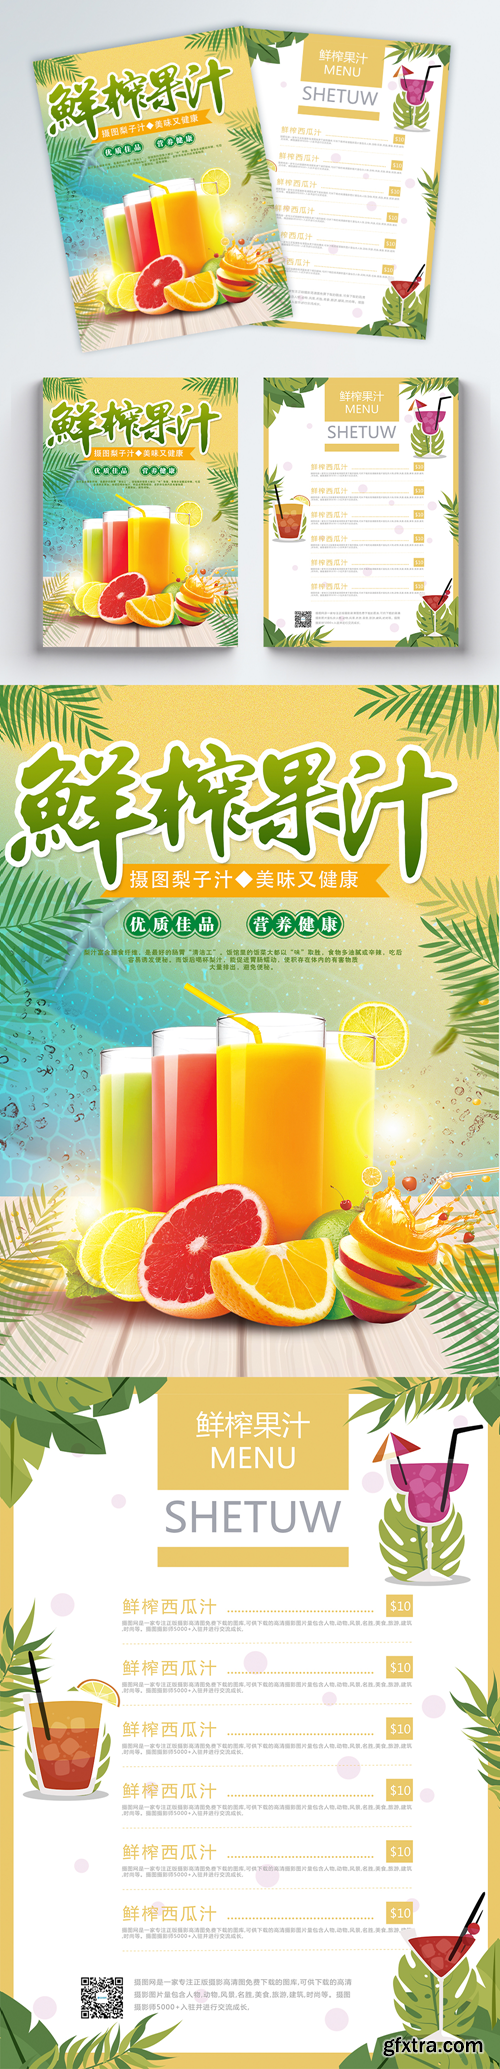 sales promotion flyer for fresh fruit juice